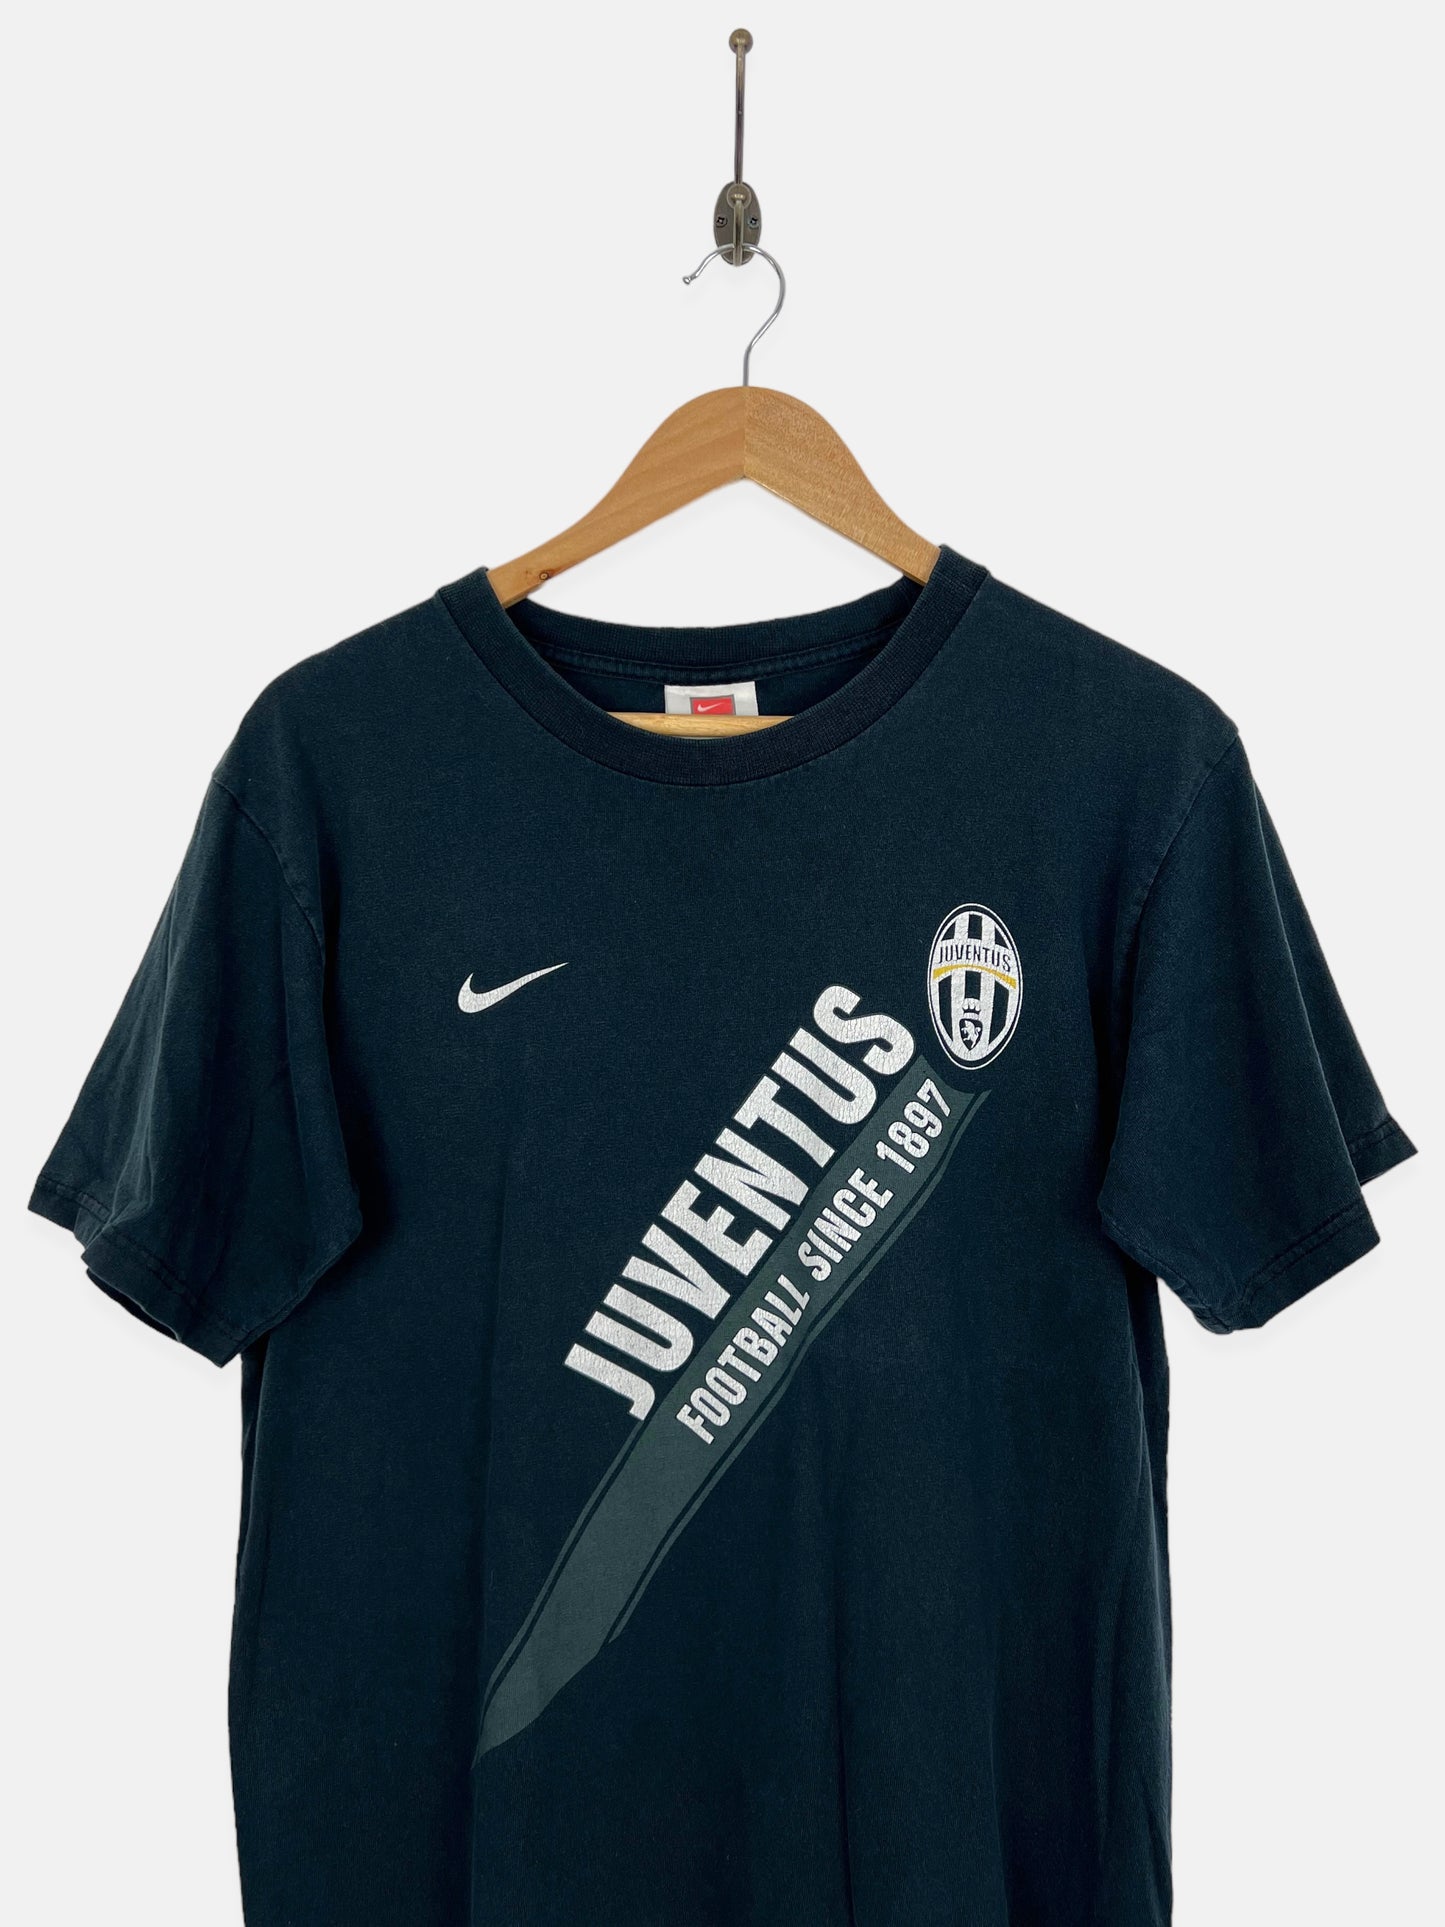 90's Nike Juventus Vintage T-Shirt Size 8-10